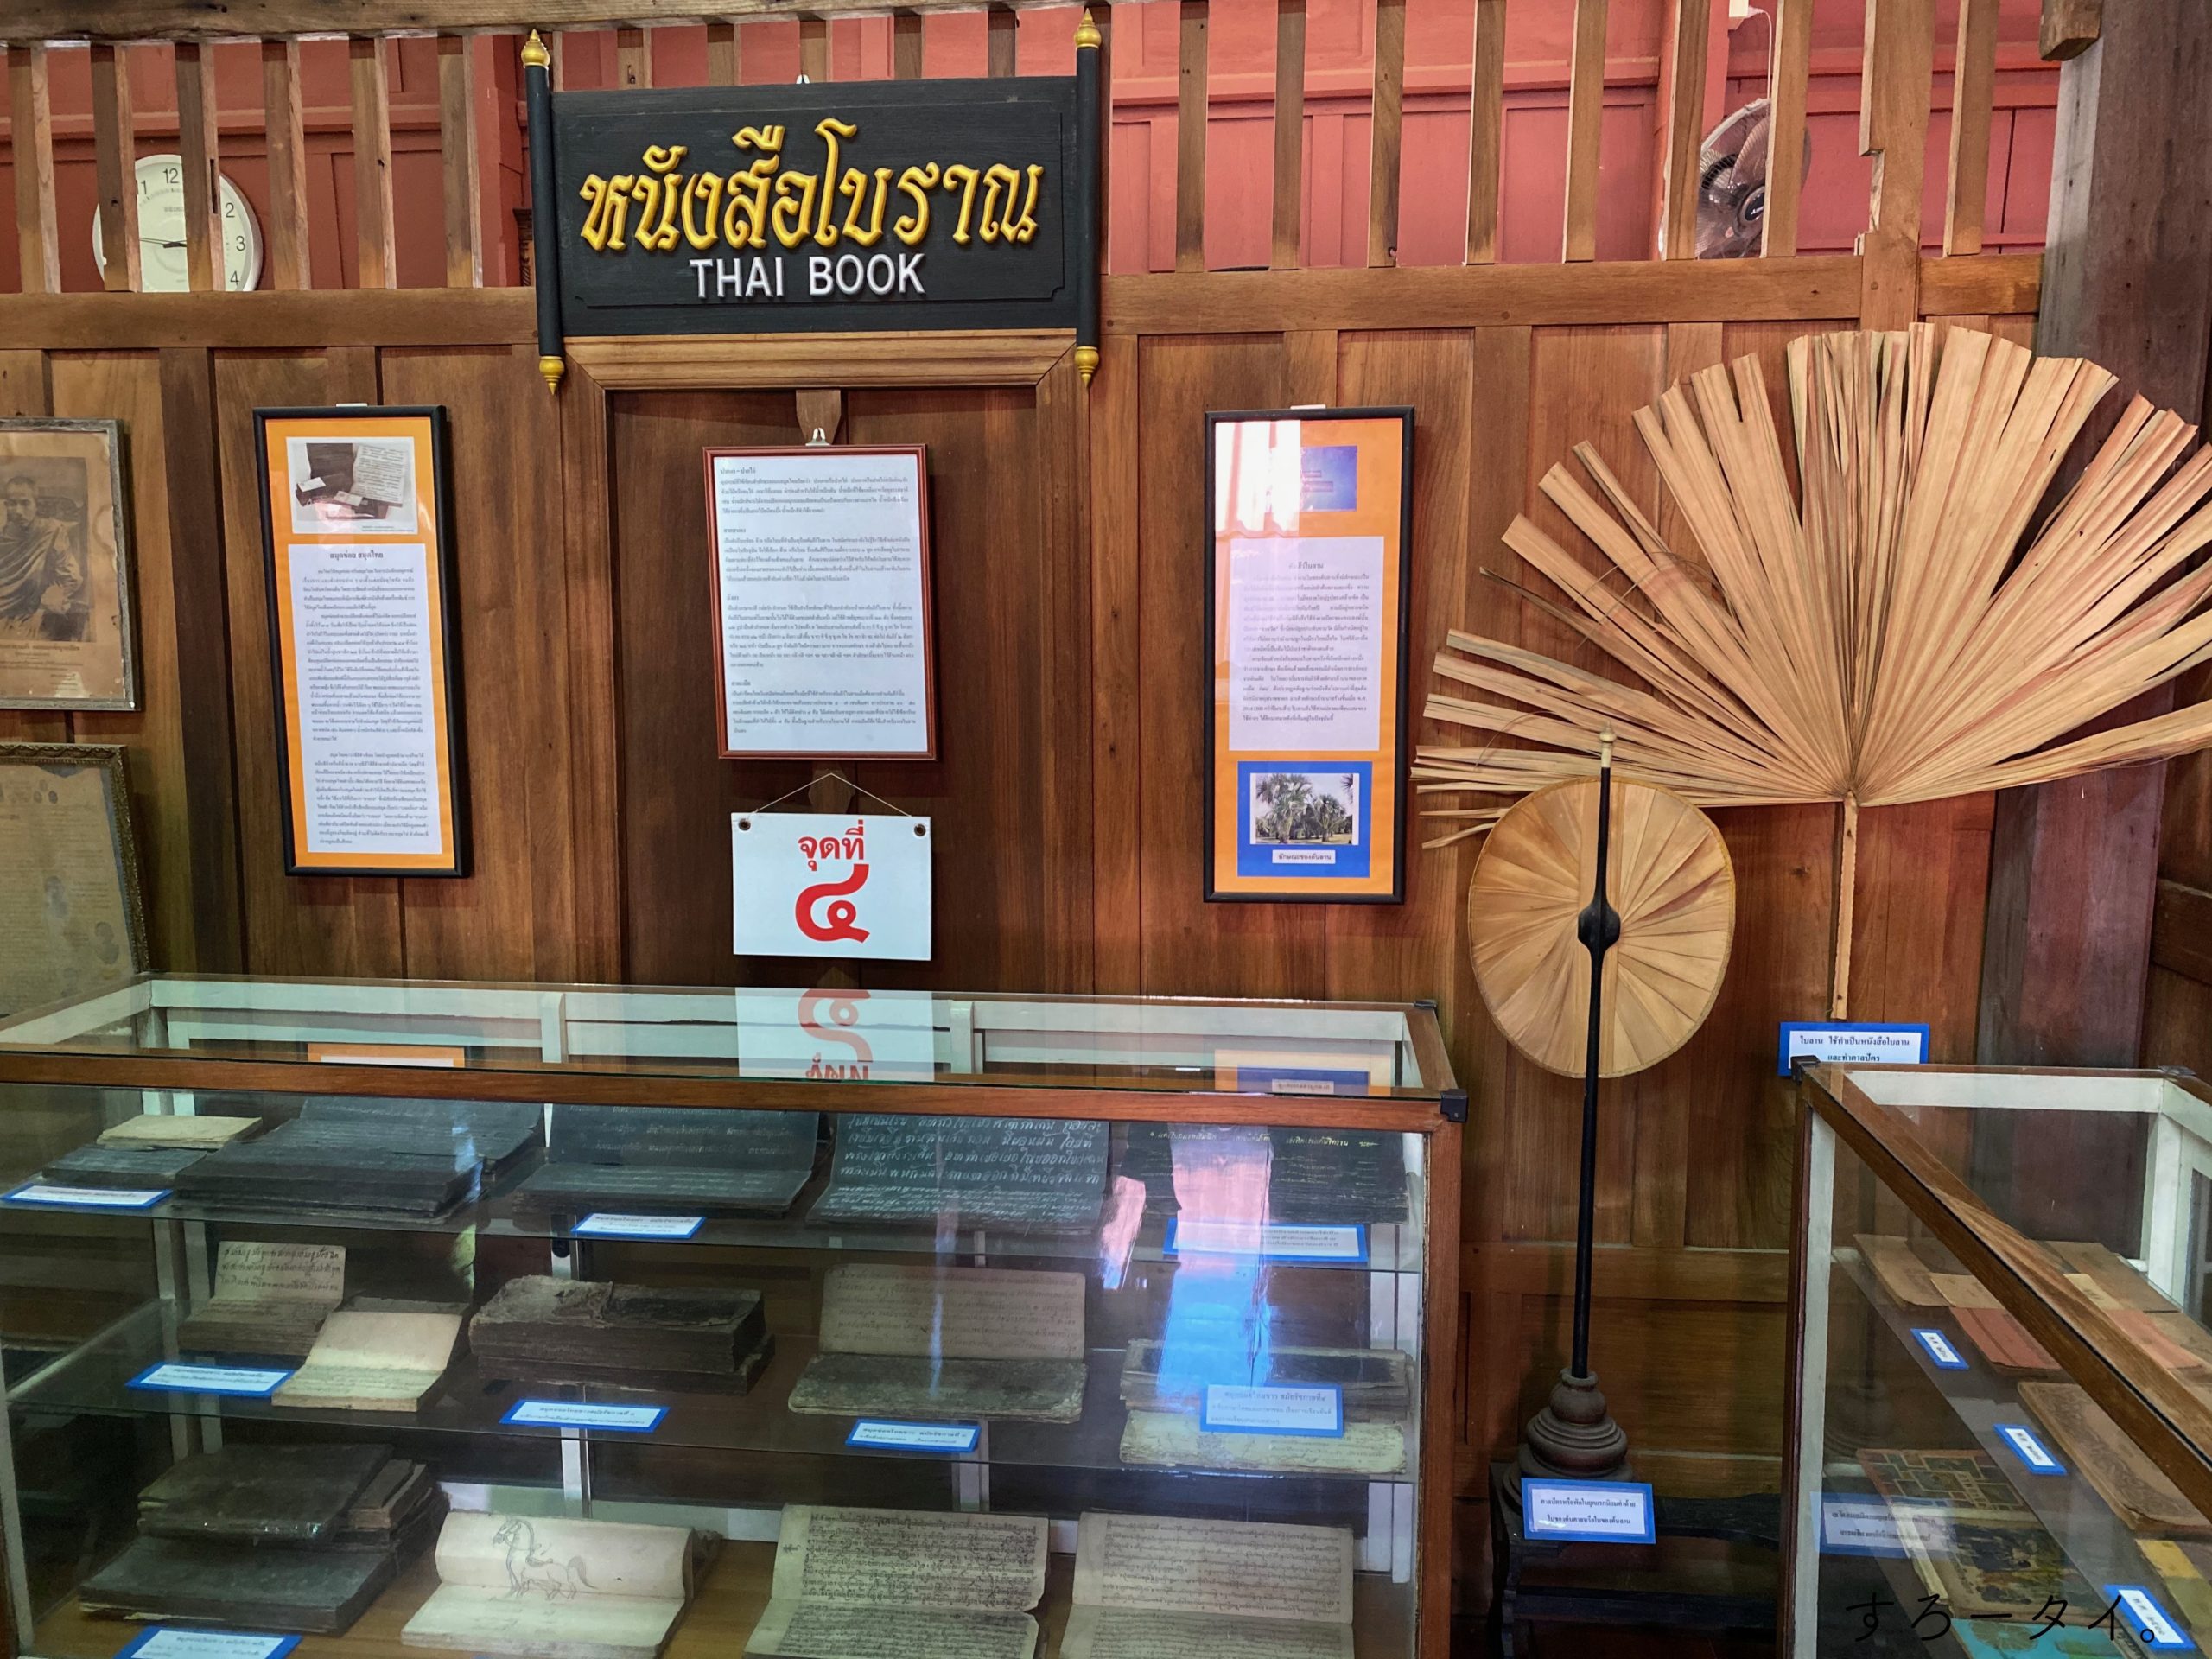 ワット・ナン Wat Nang วัดหนัง　教育博物館